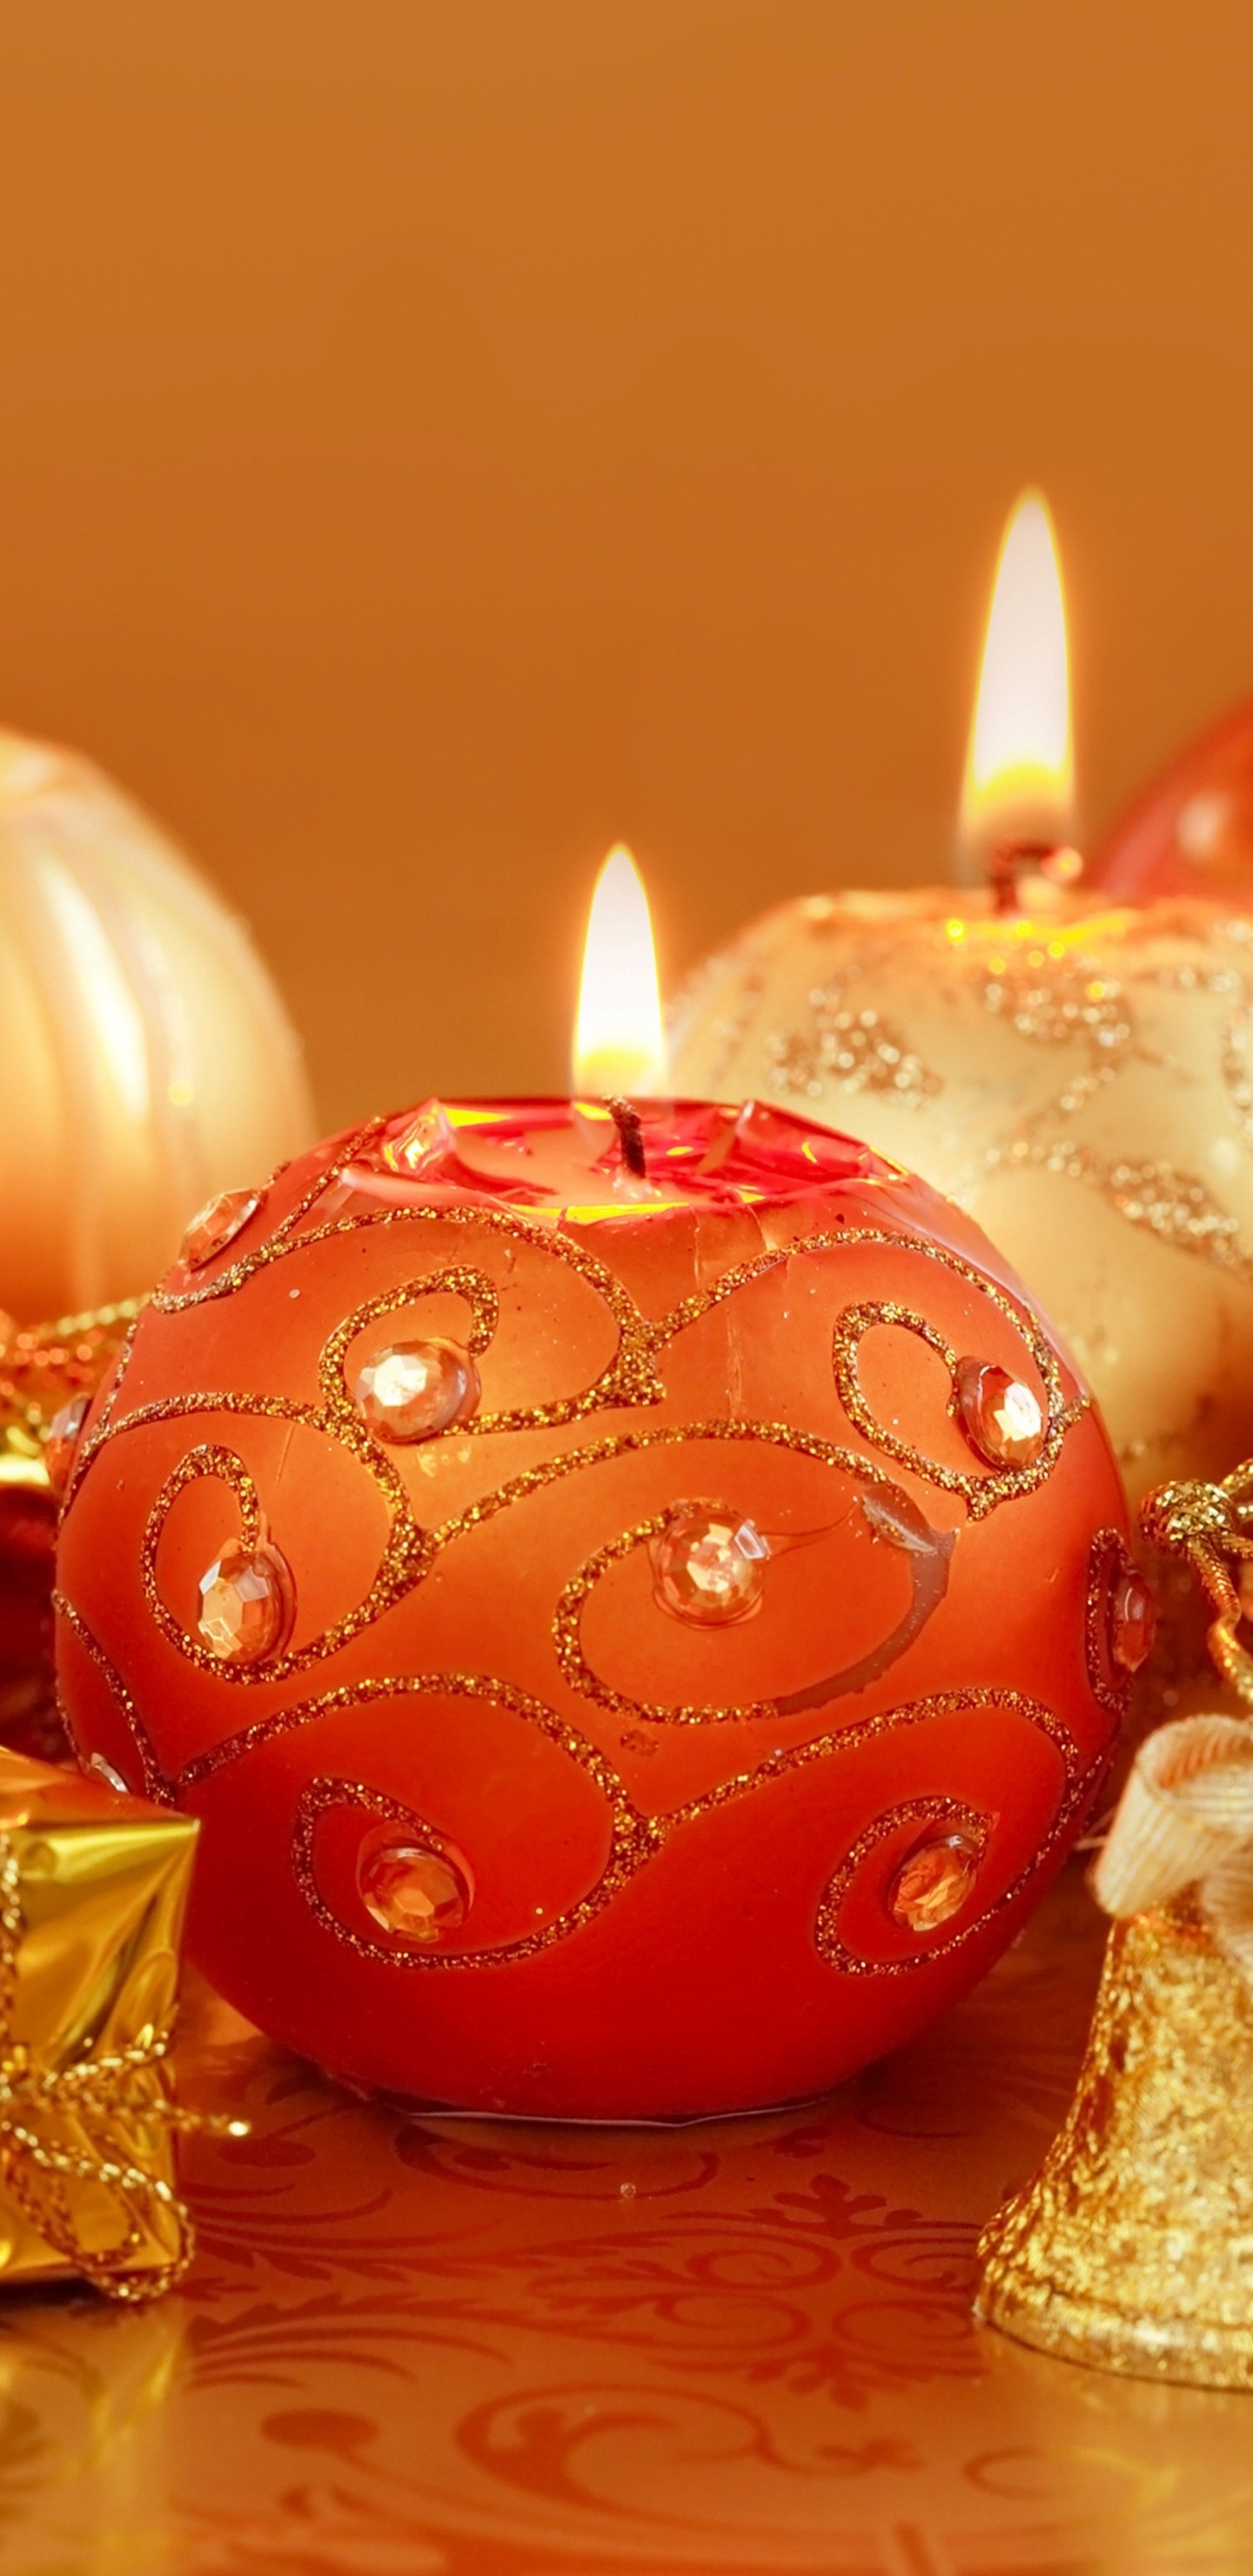 圣诞节那天, 新的一年, 仍然生活, 圣诞节的装饰品, 橙色 壁纸 1440x2960 允许